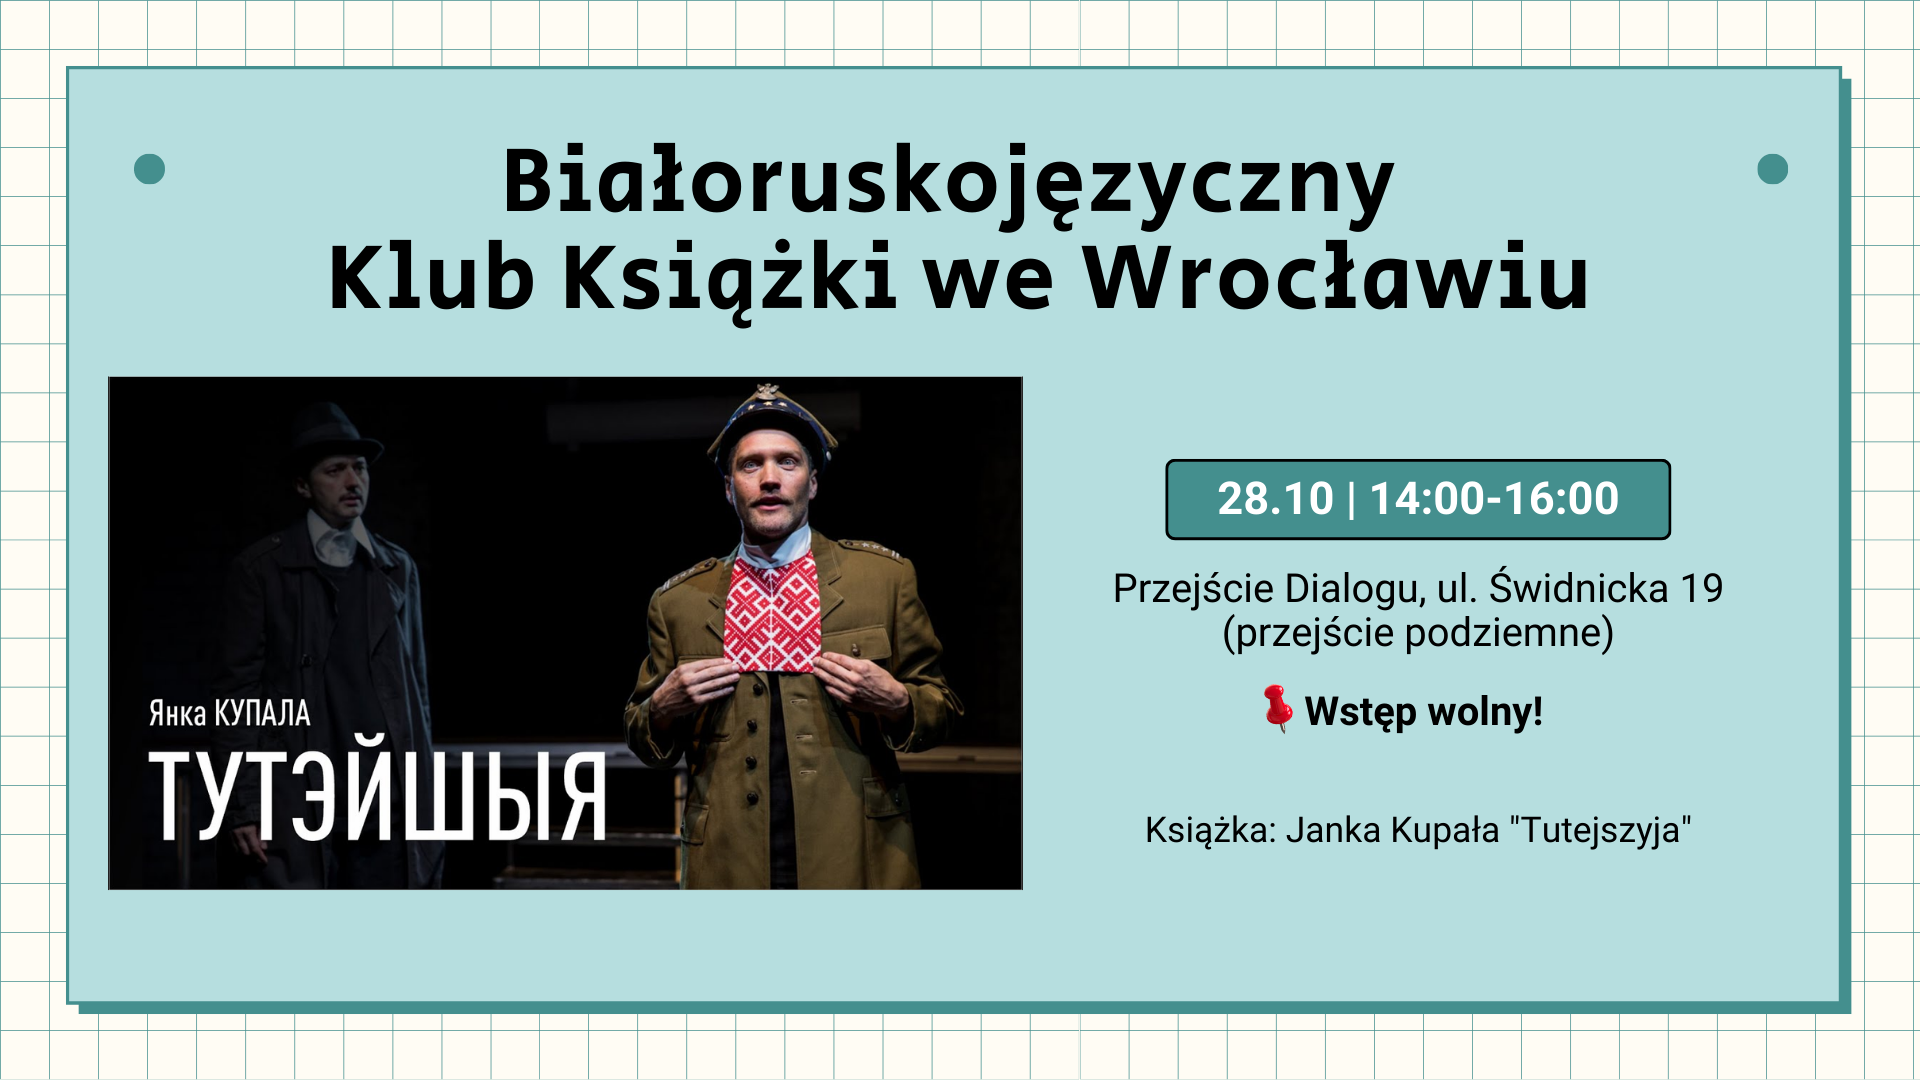 Białoruskojęzyczny Klub Książki w Przejście Dialogu.